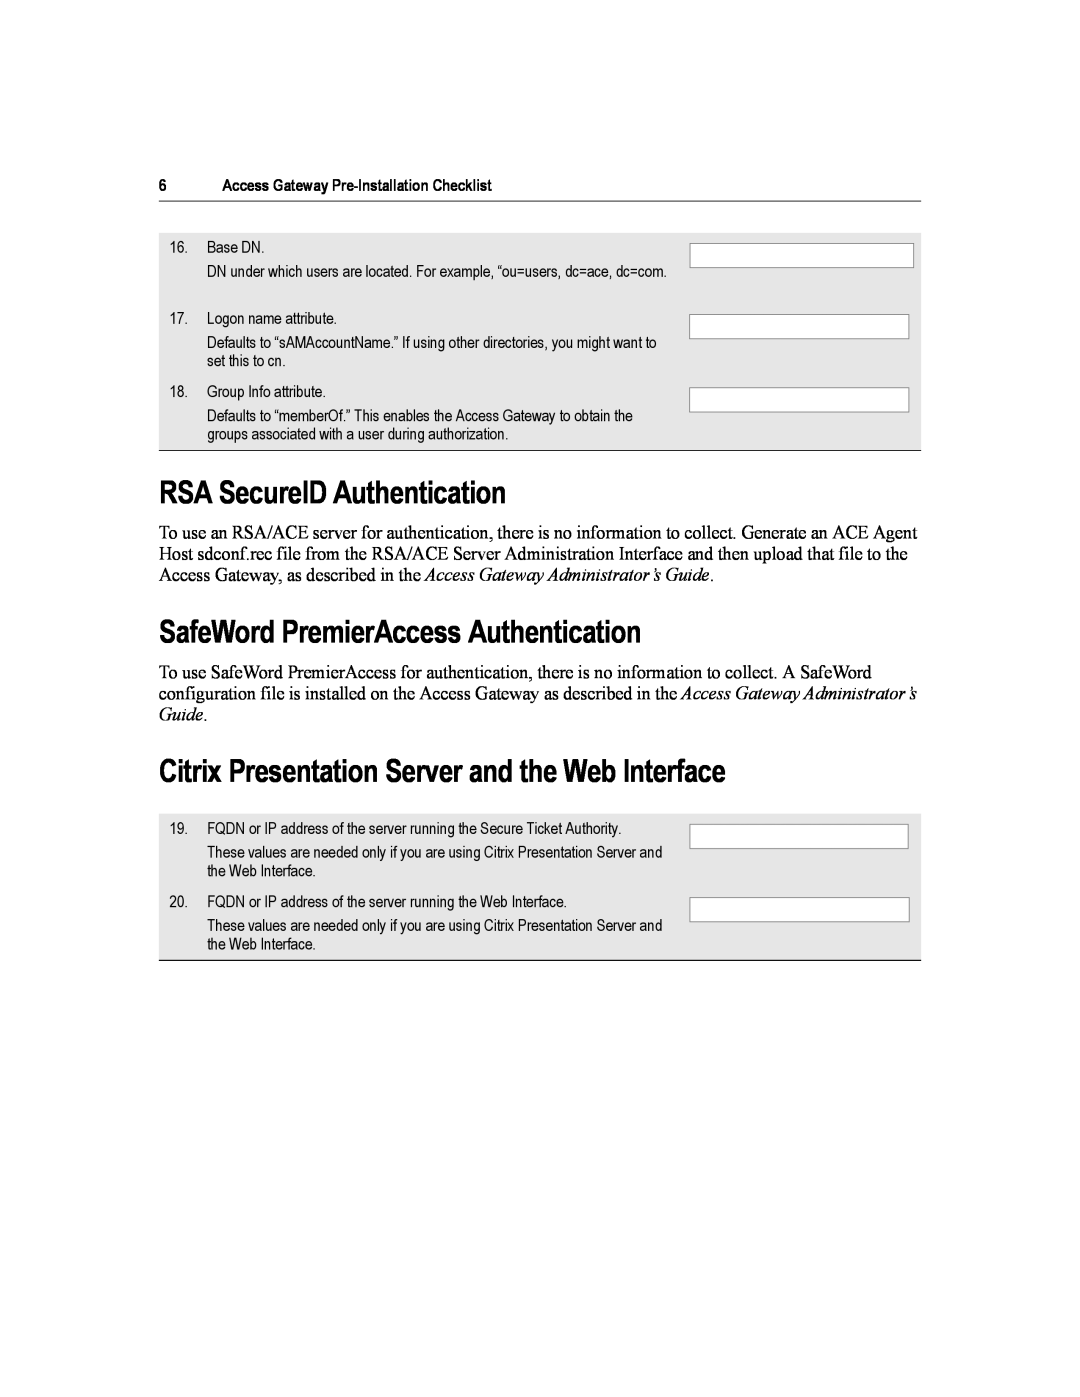 Citrix Systems 4.2 manual RSA SecureID Authentication, SafeWord PremierAccess Authentication 